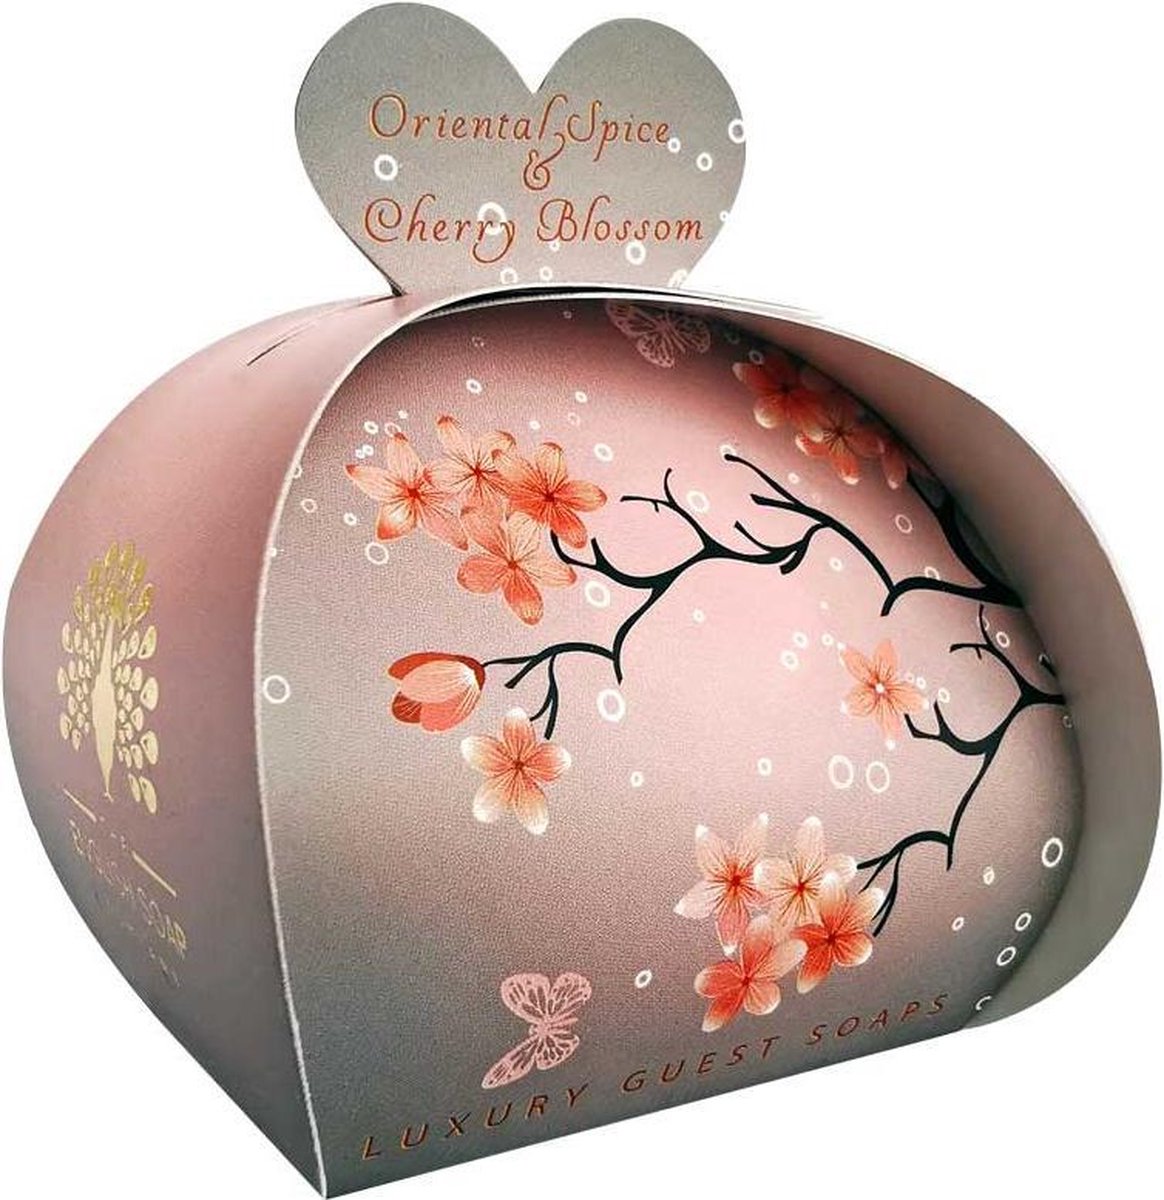 Gastenzeepjes Oriental Spice & Cherry Blossom 3 x 20 gr